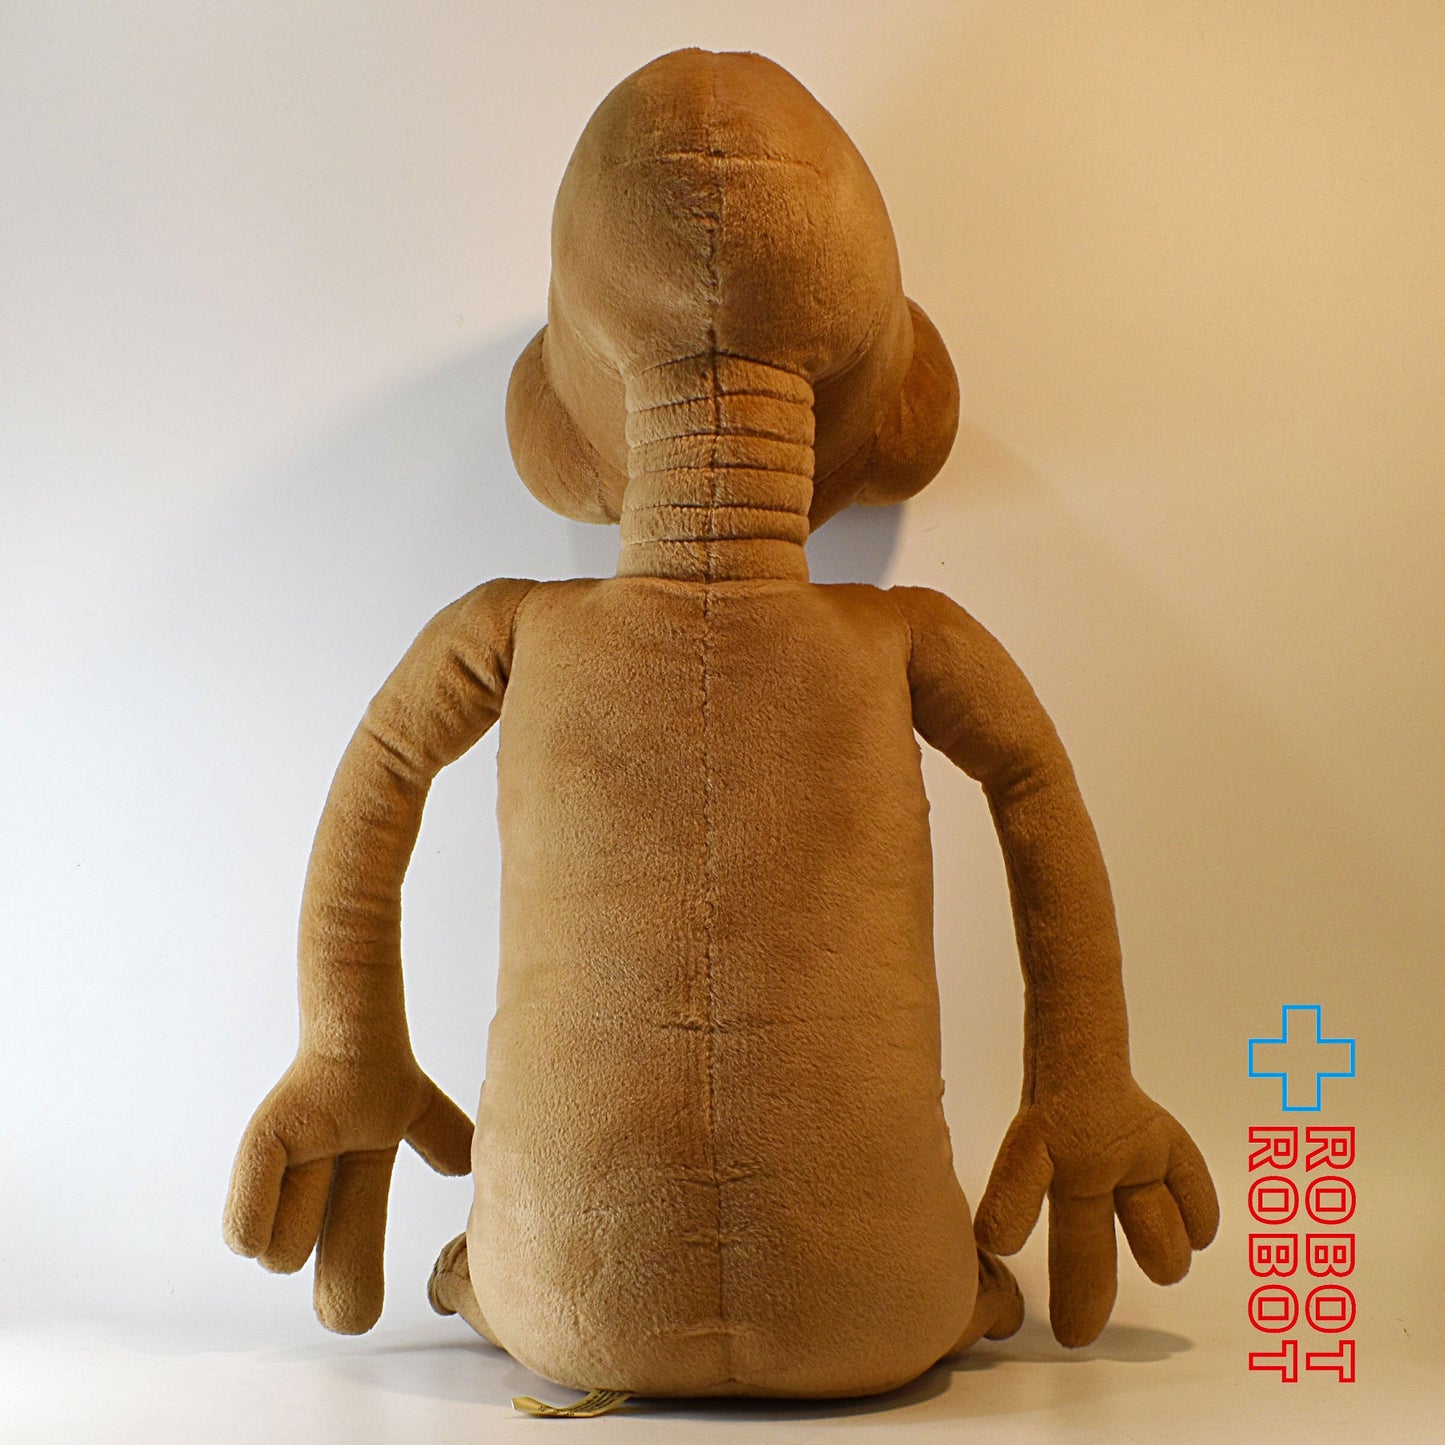 吉徳 E.T. ぬいぐるみ人形 53cm